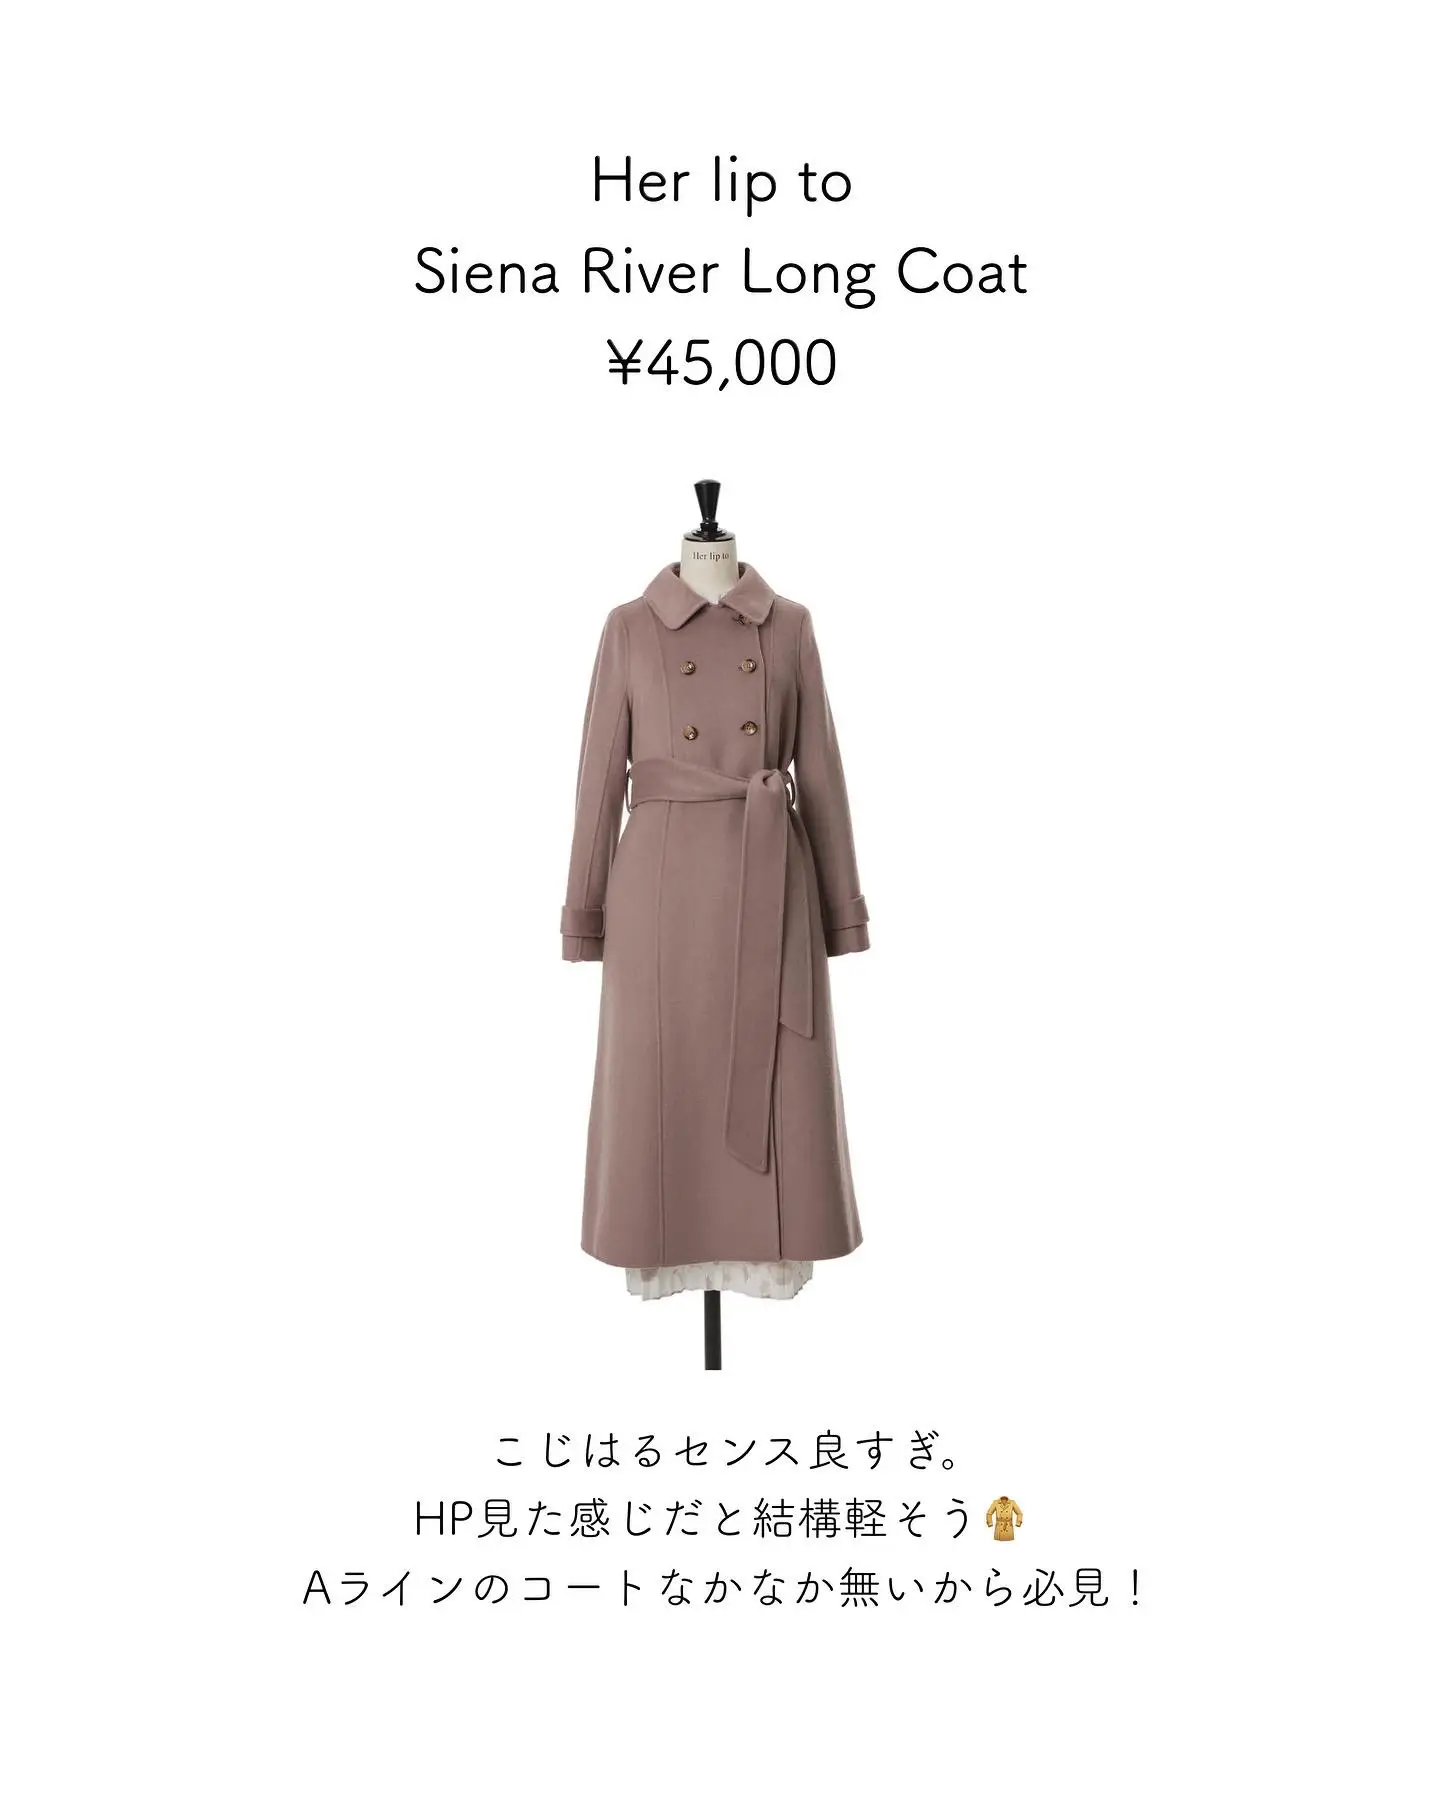 ✨新品✨【Her lip to】Siena River Long Coat